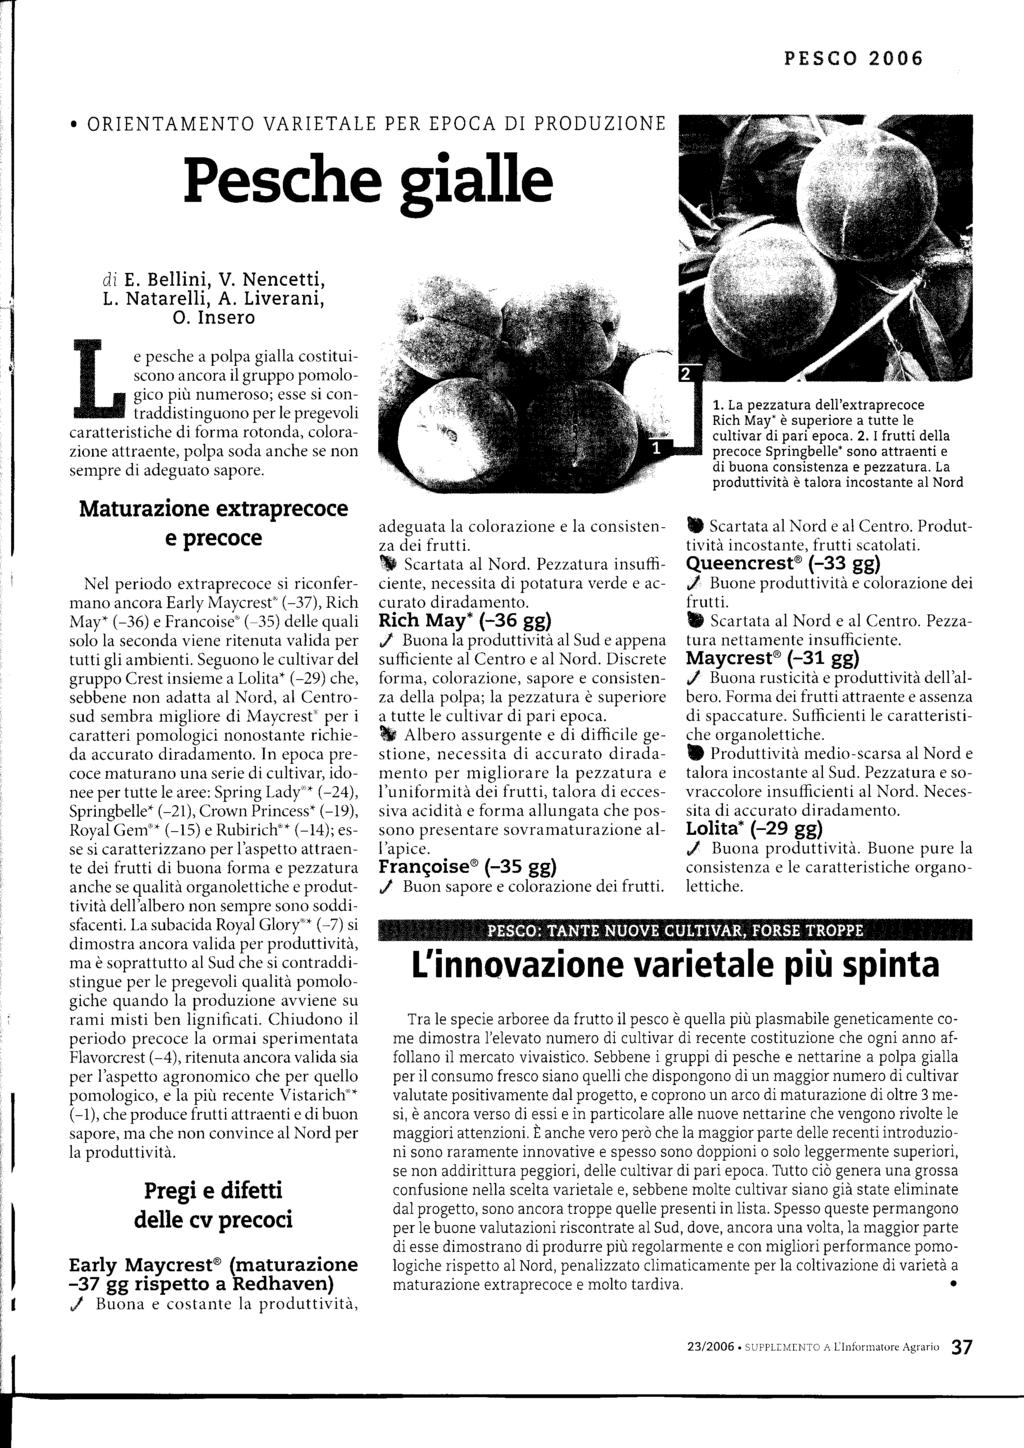 PXSCO 2006. ORIENTAMENTO VARIETALE PER EPOCA DI PRODUZIONE Pesche gialle di E. Bellini, V. Nencetti, L. Natarelli, A. Liverani, O.